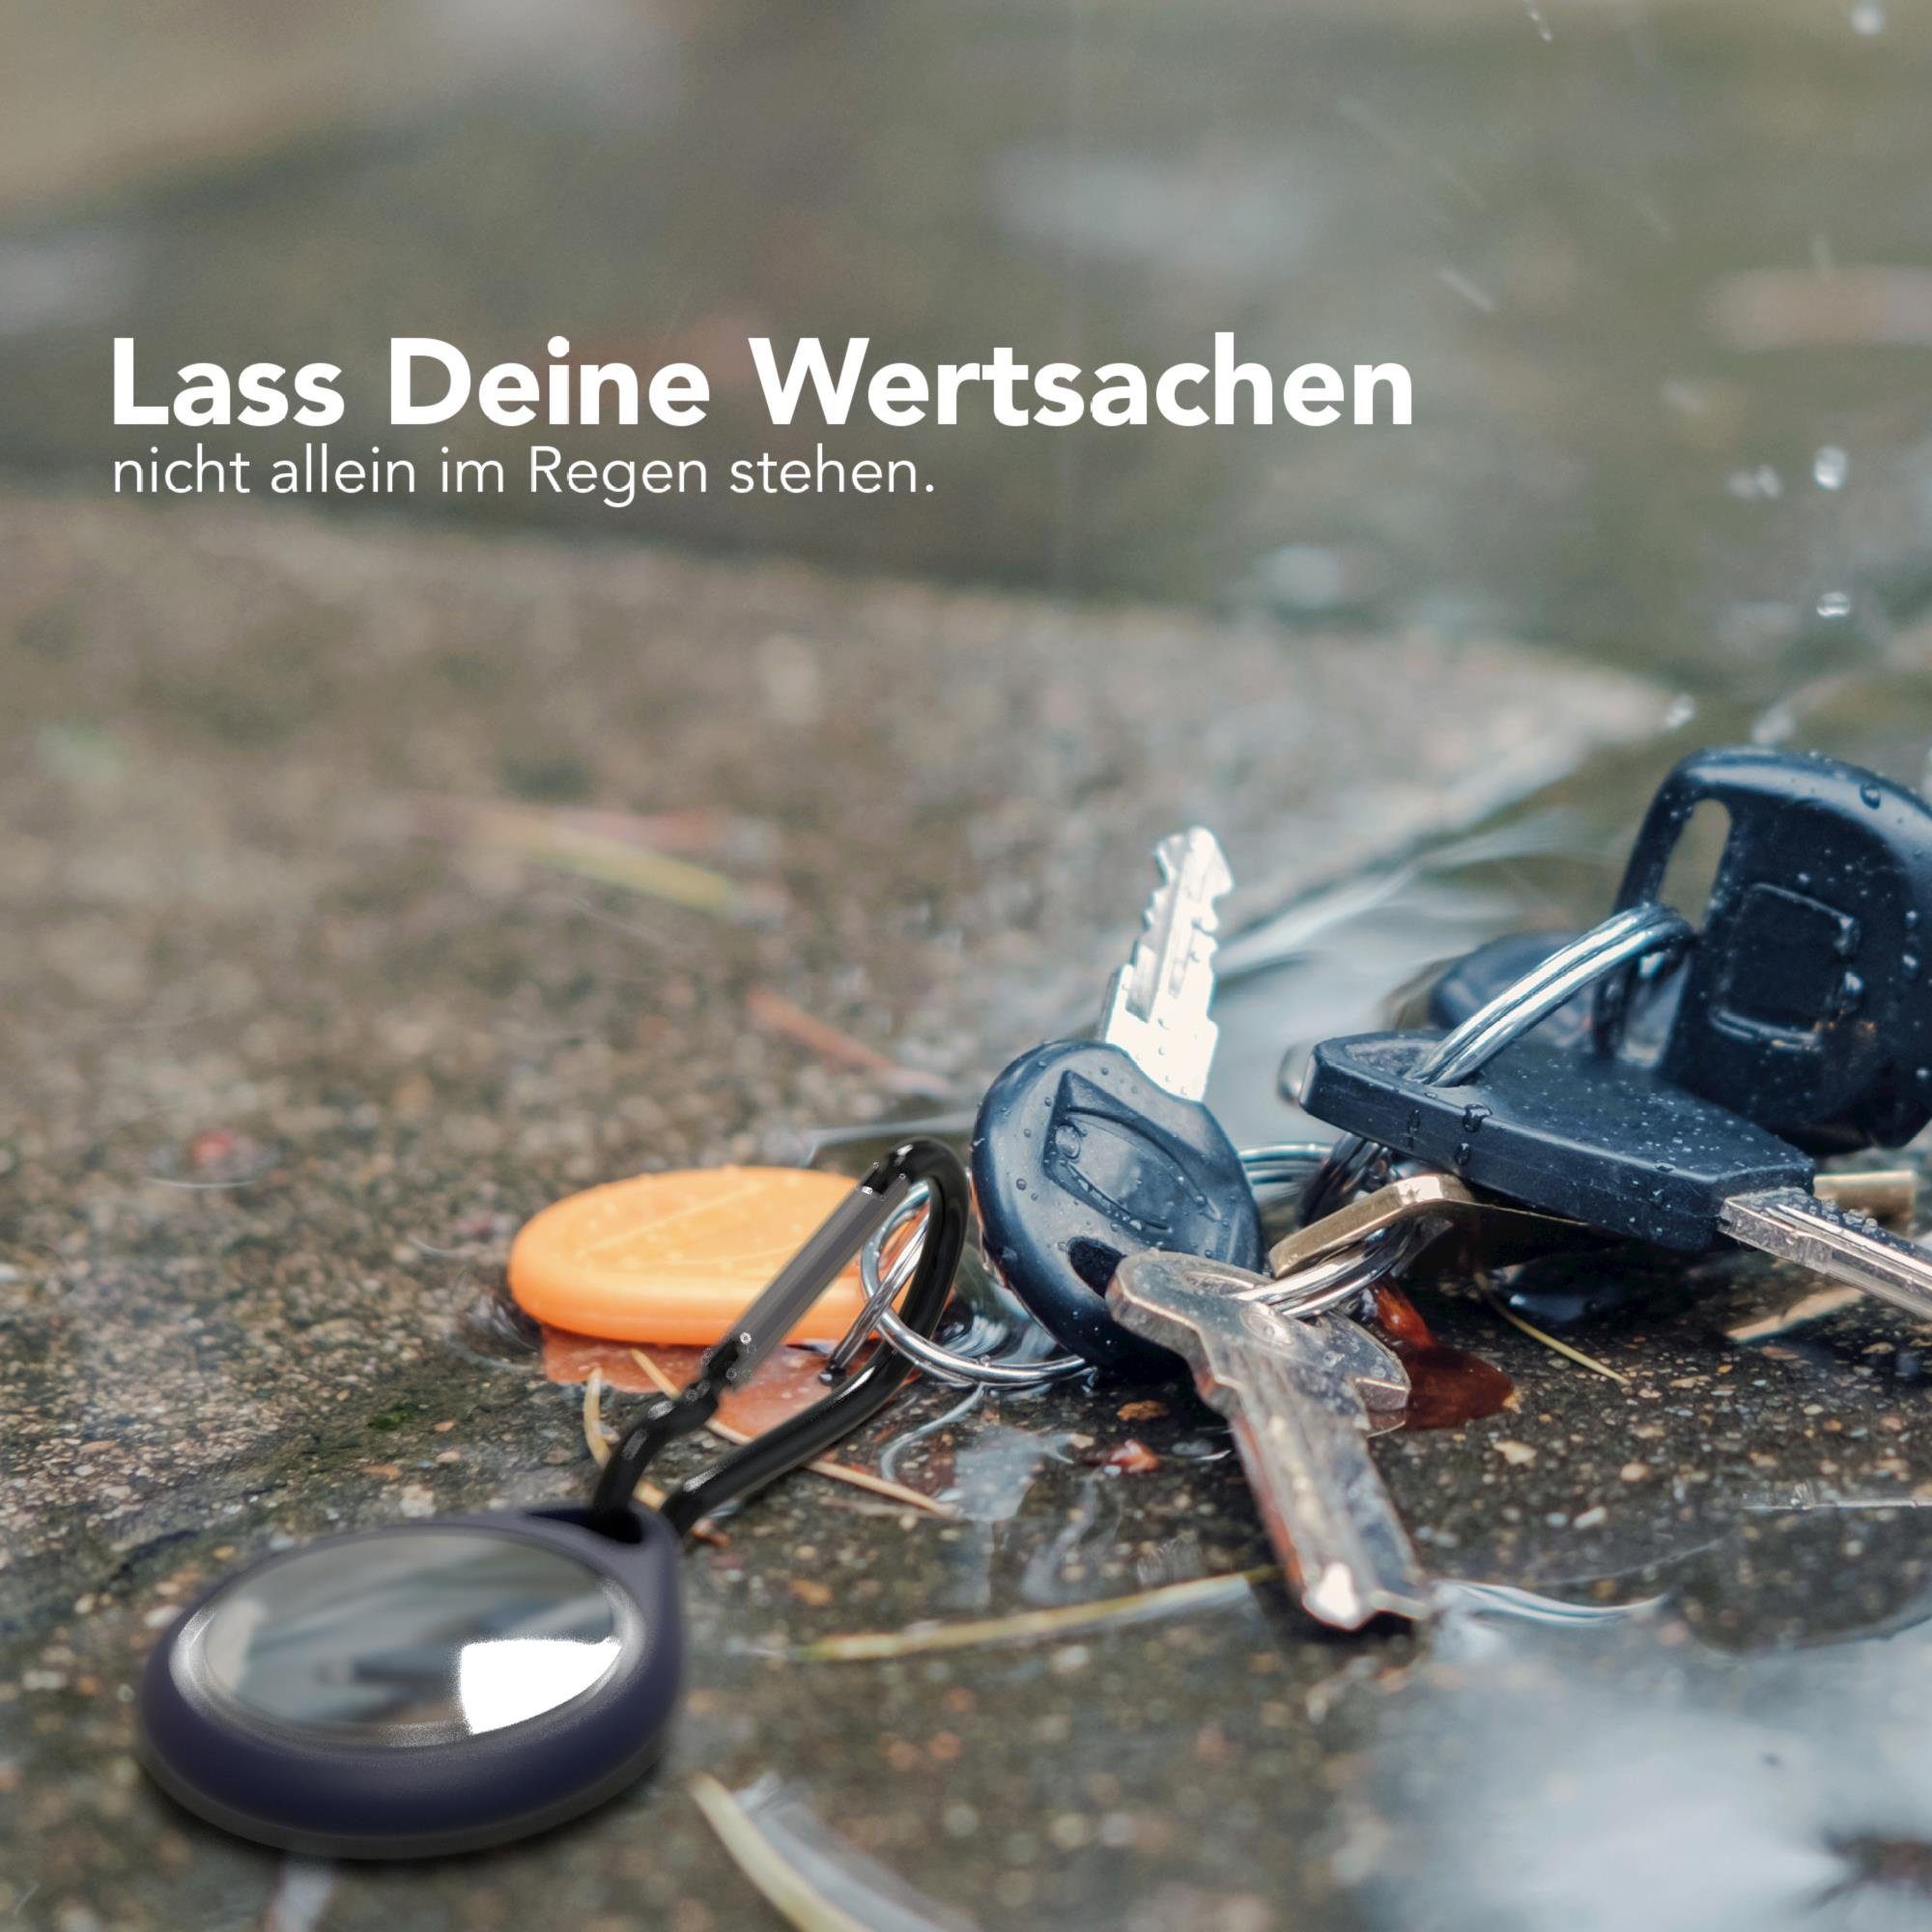 EAZY CASE Schlüsselanhänger Anhänger kompatibel Tracker Schutzhülle mit Hülle Blau Airtag Karabiner Case AirTag, Dunkel Apple Schwarz